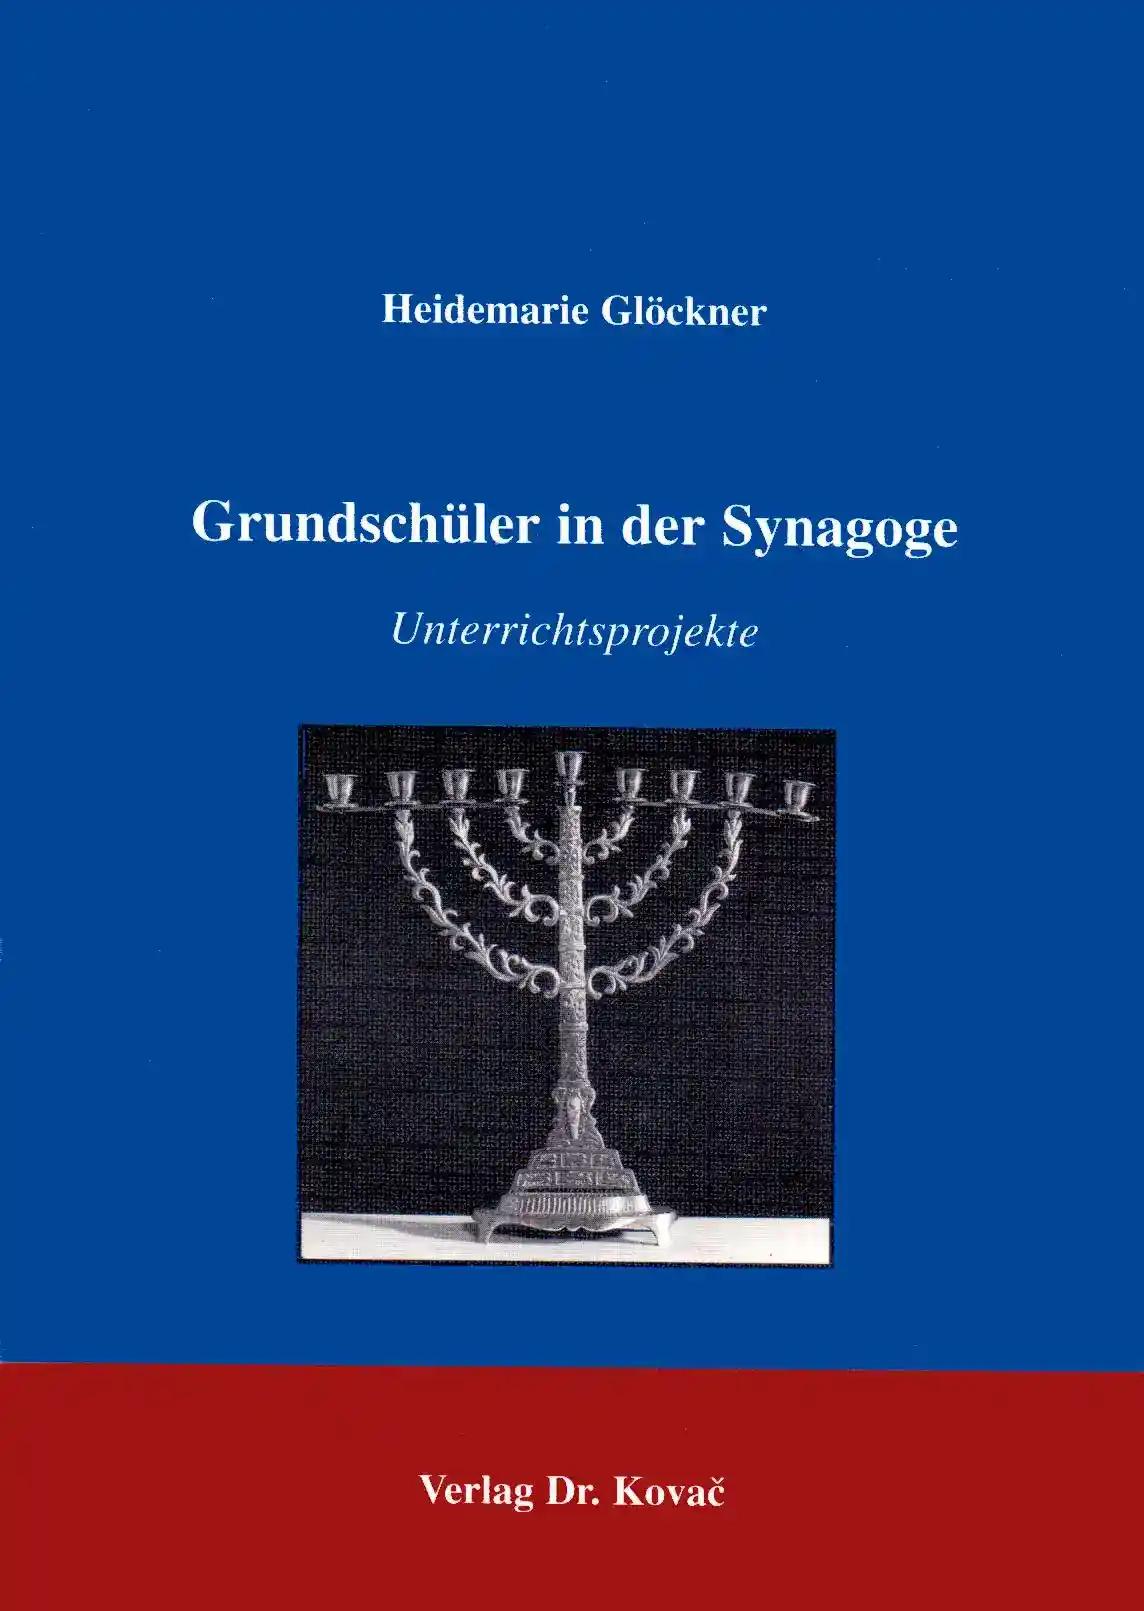 Grundschüler in der Synagoge, Unterrichtsprojekte - Heidemarie Glöckner